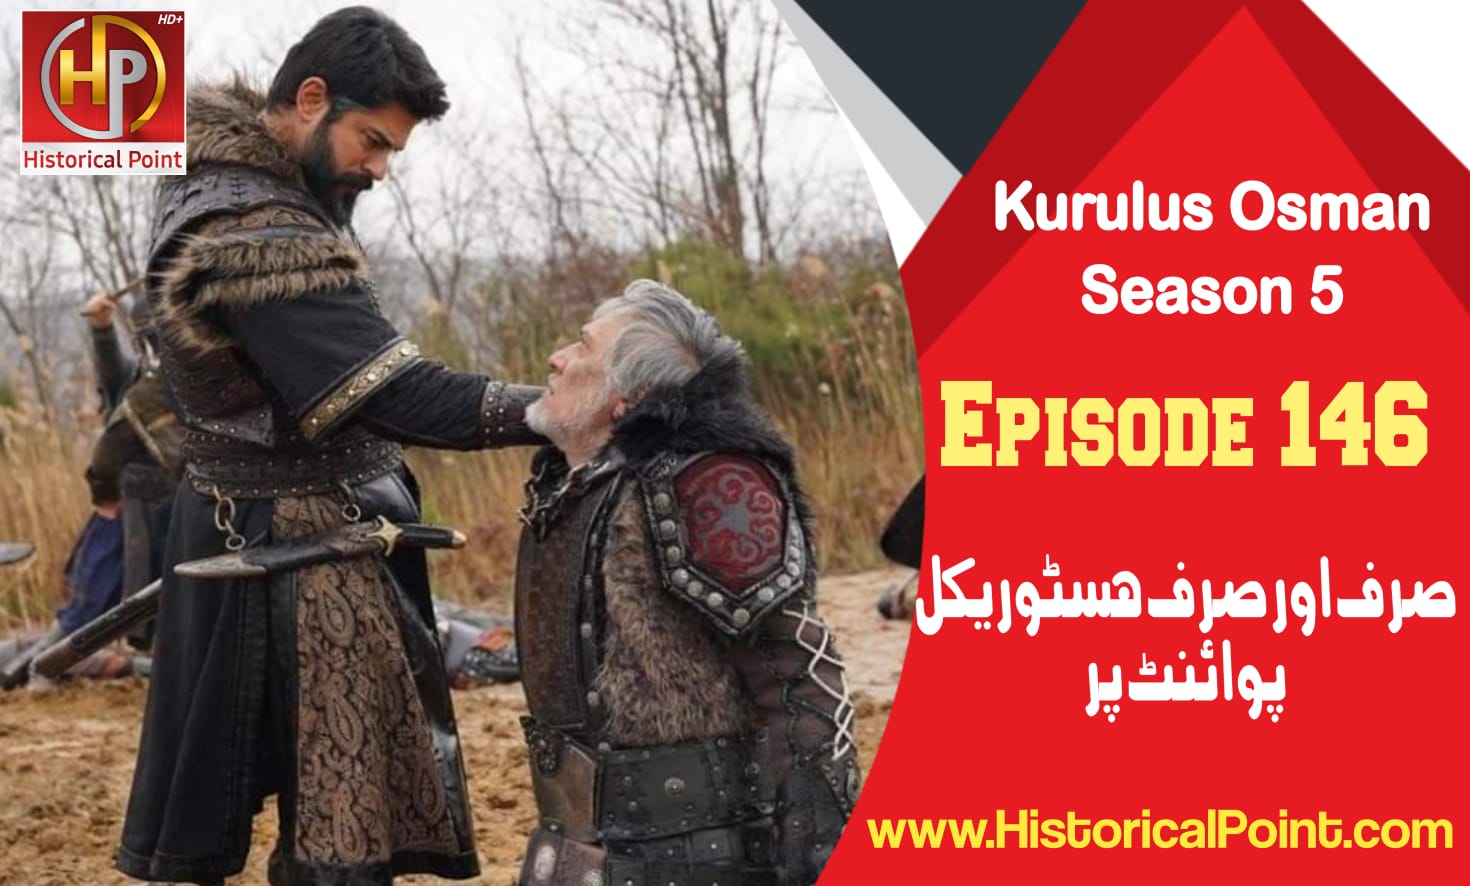 Kurulus Osman Episode 146 in Urdu